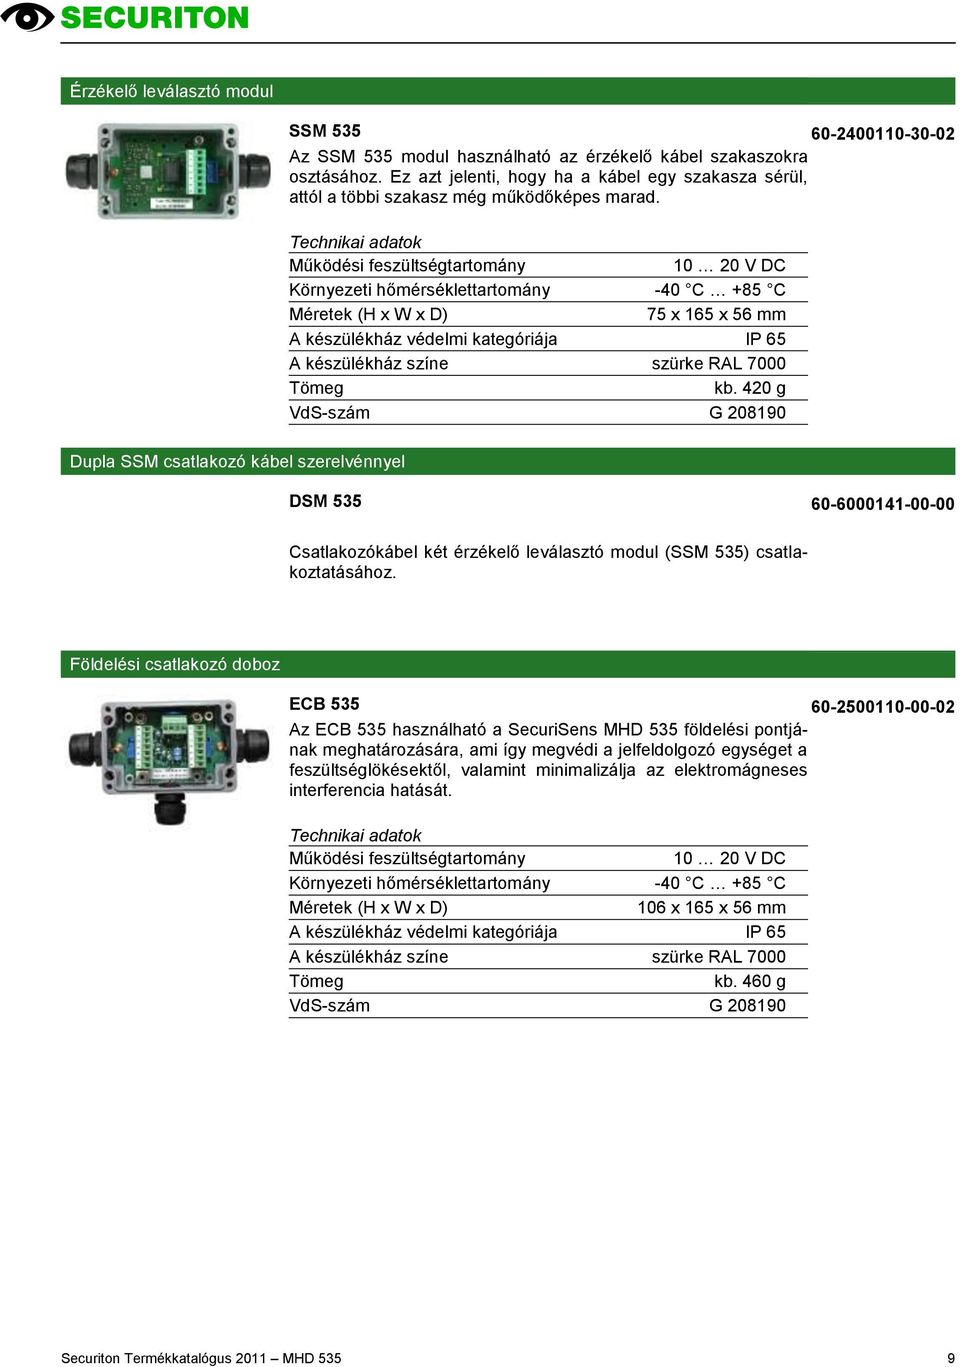 10 20 V DC Környezeti hőmérséklettartomány -40 C +85 C 75 x 165 x 56 mm A készülékház színe szürke RAL 7000 kb.